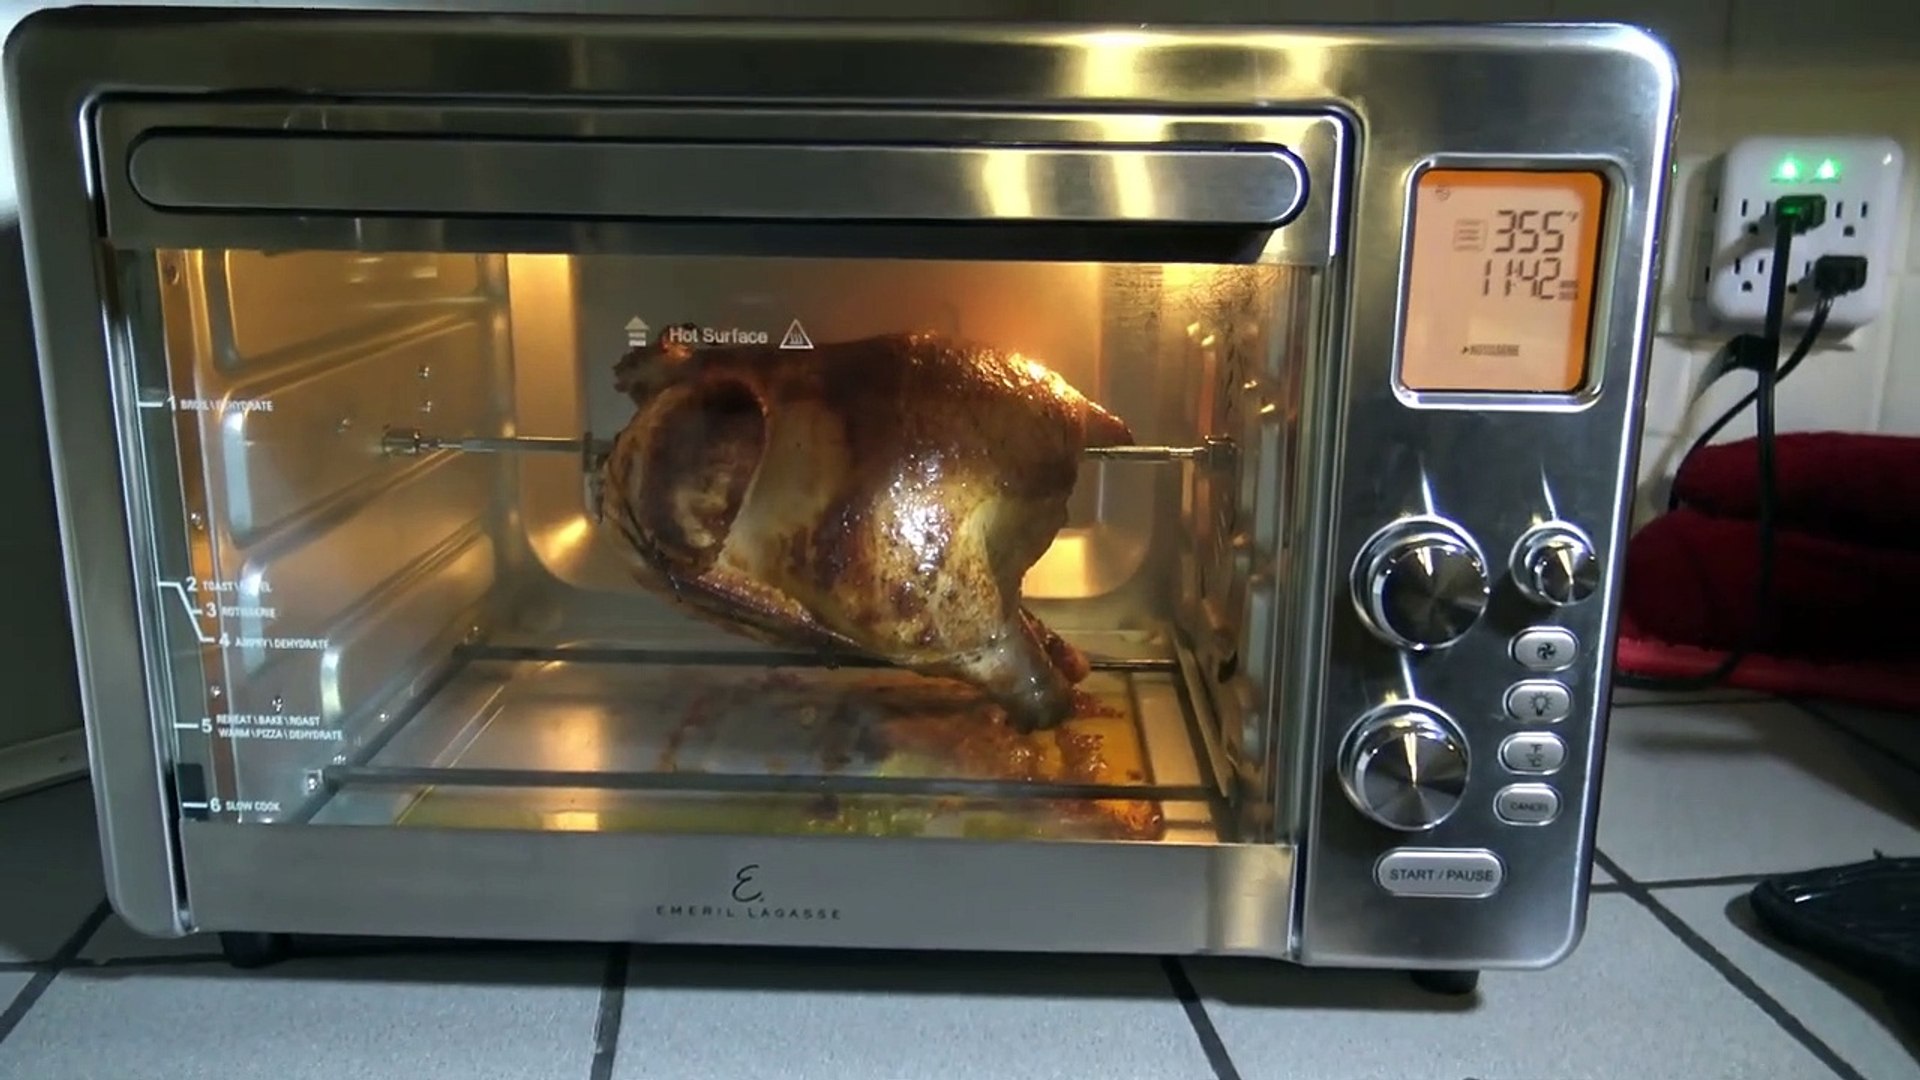 rotisserie chicken in emeril lagasse air fryer